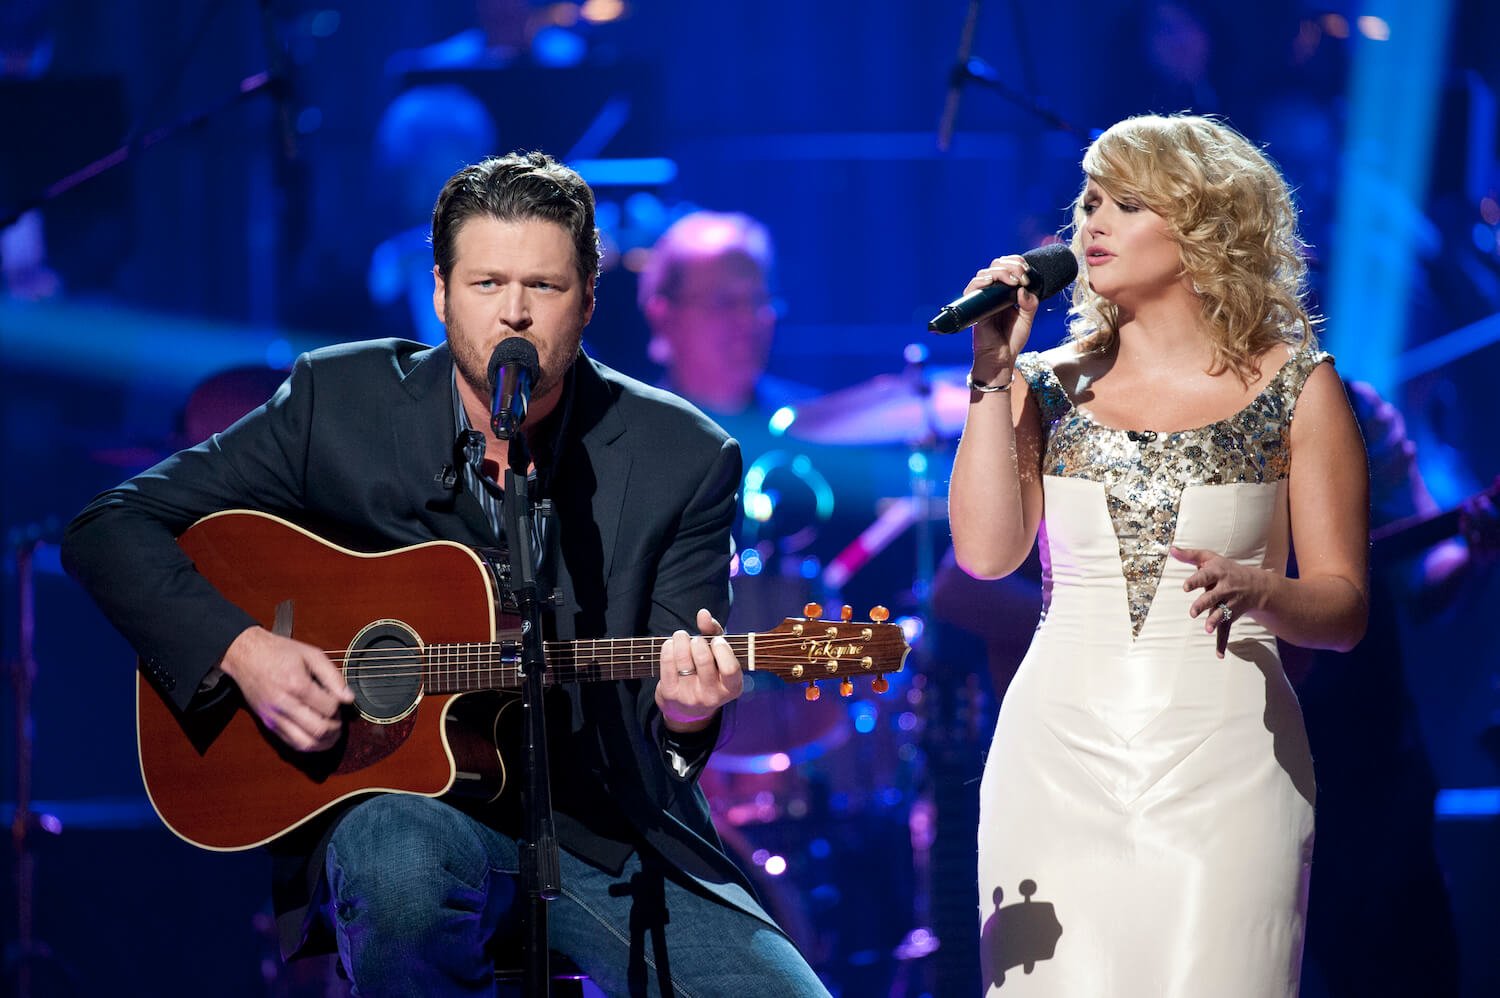 Blake Shelton playing guitar next to Miranda Lambert singing into a microphone on stage. Lambert wears a white sparkling dress.